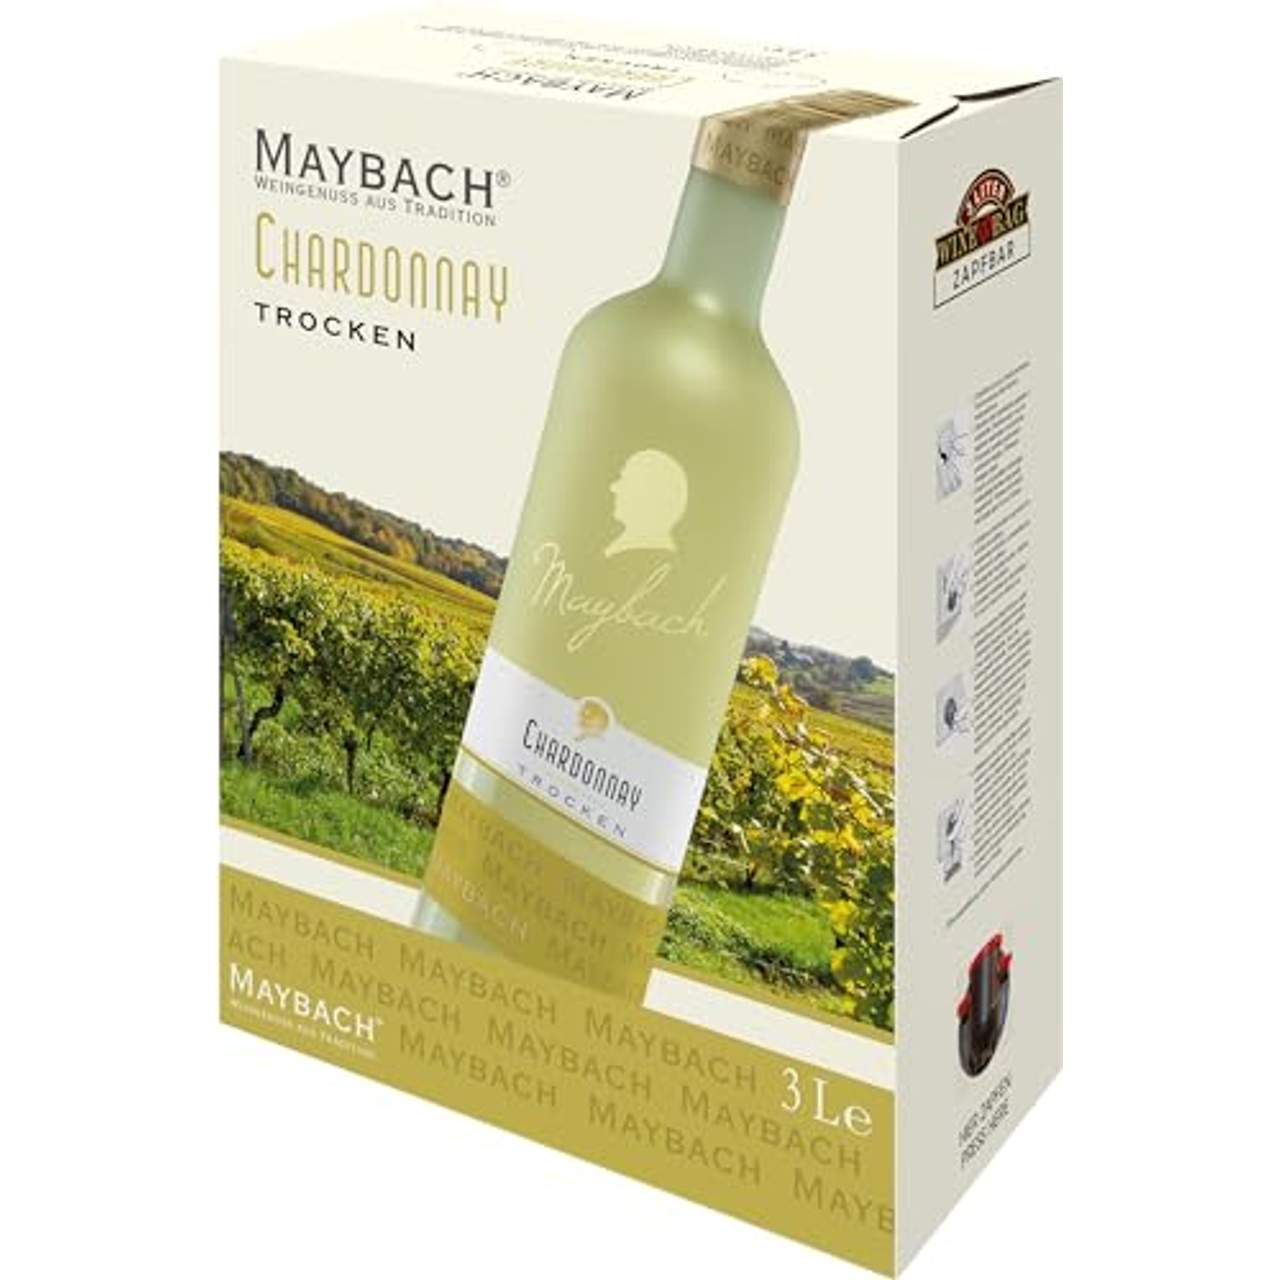 Maybach Chardonnay trocken Bag-in-box